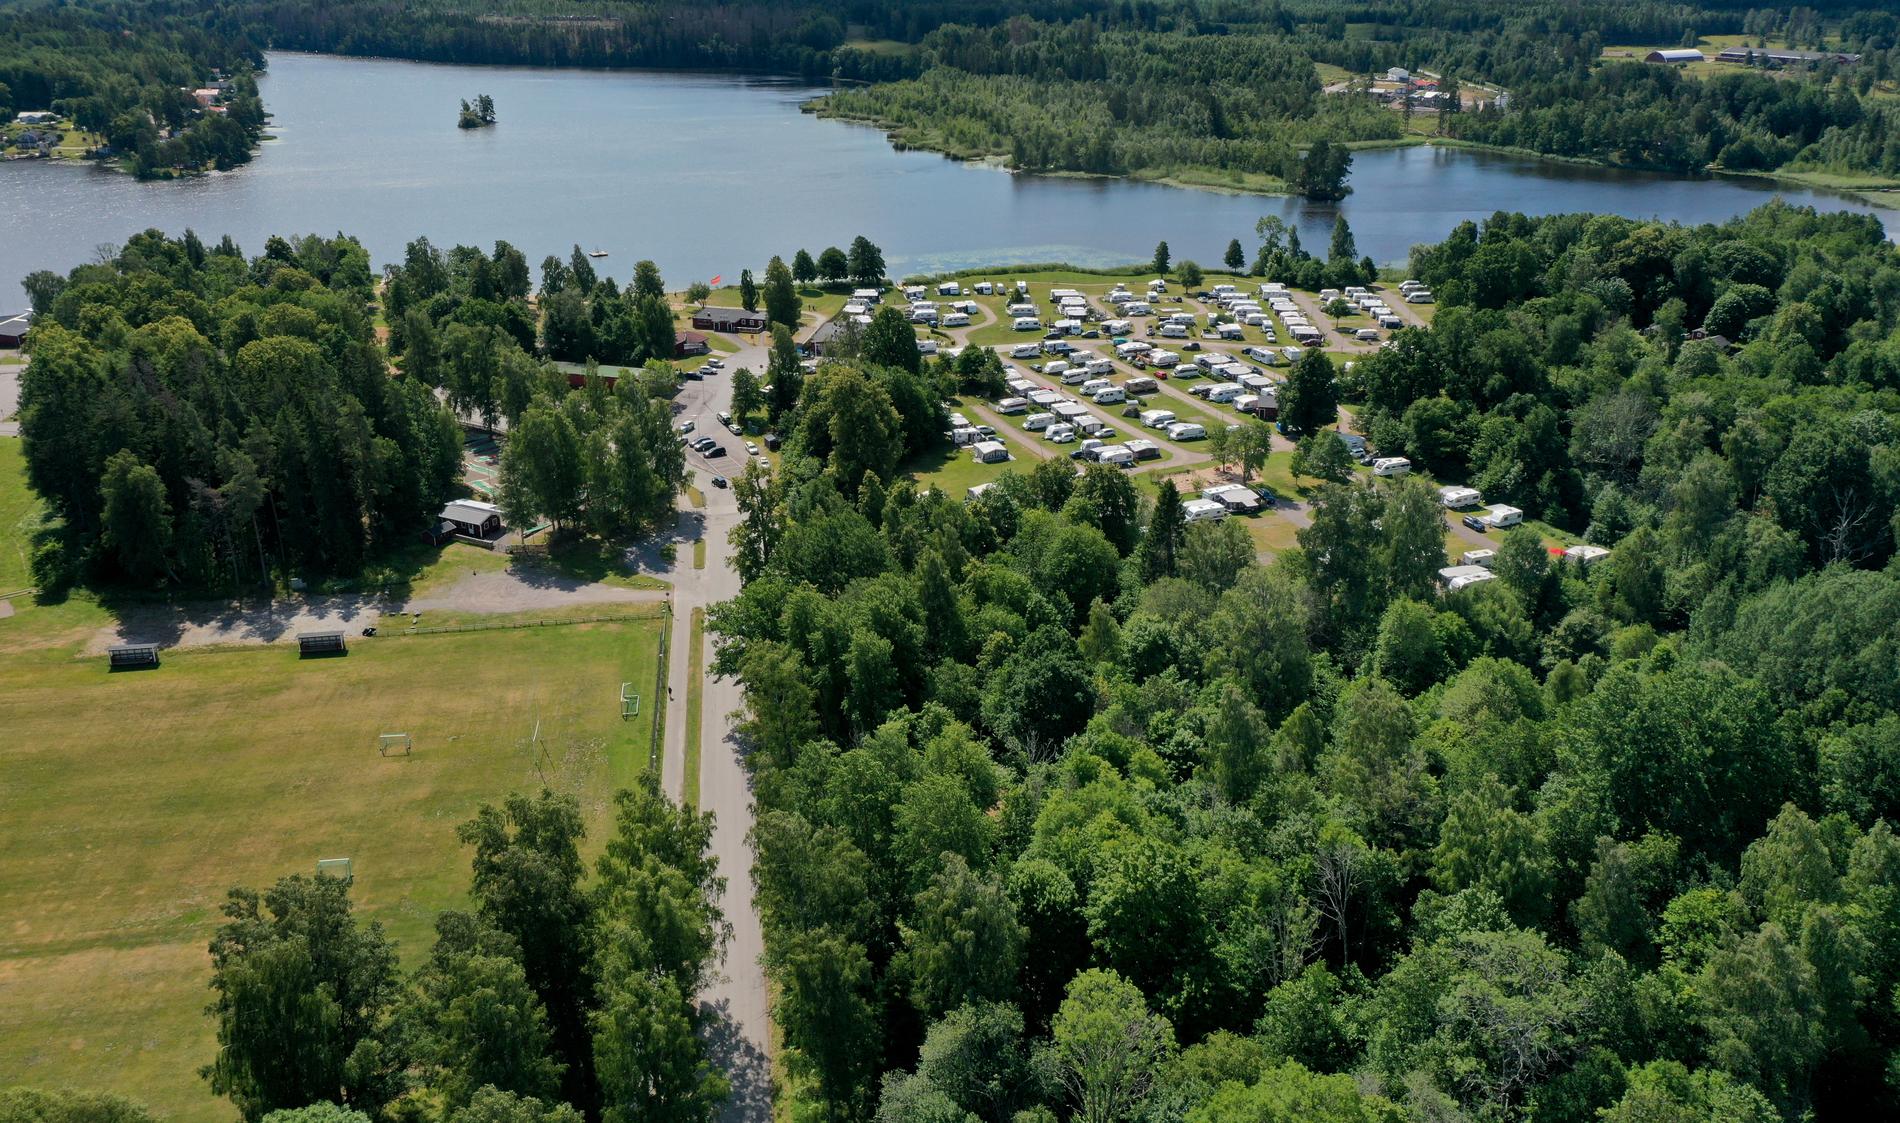 Bild över campingområdet där en ung man misstänks ha mördats.